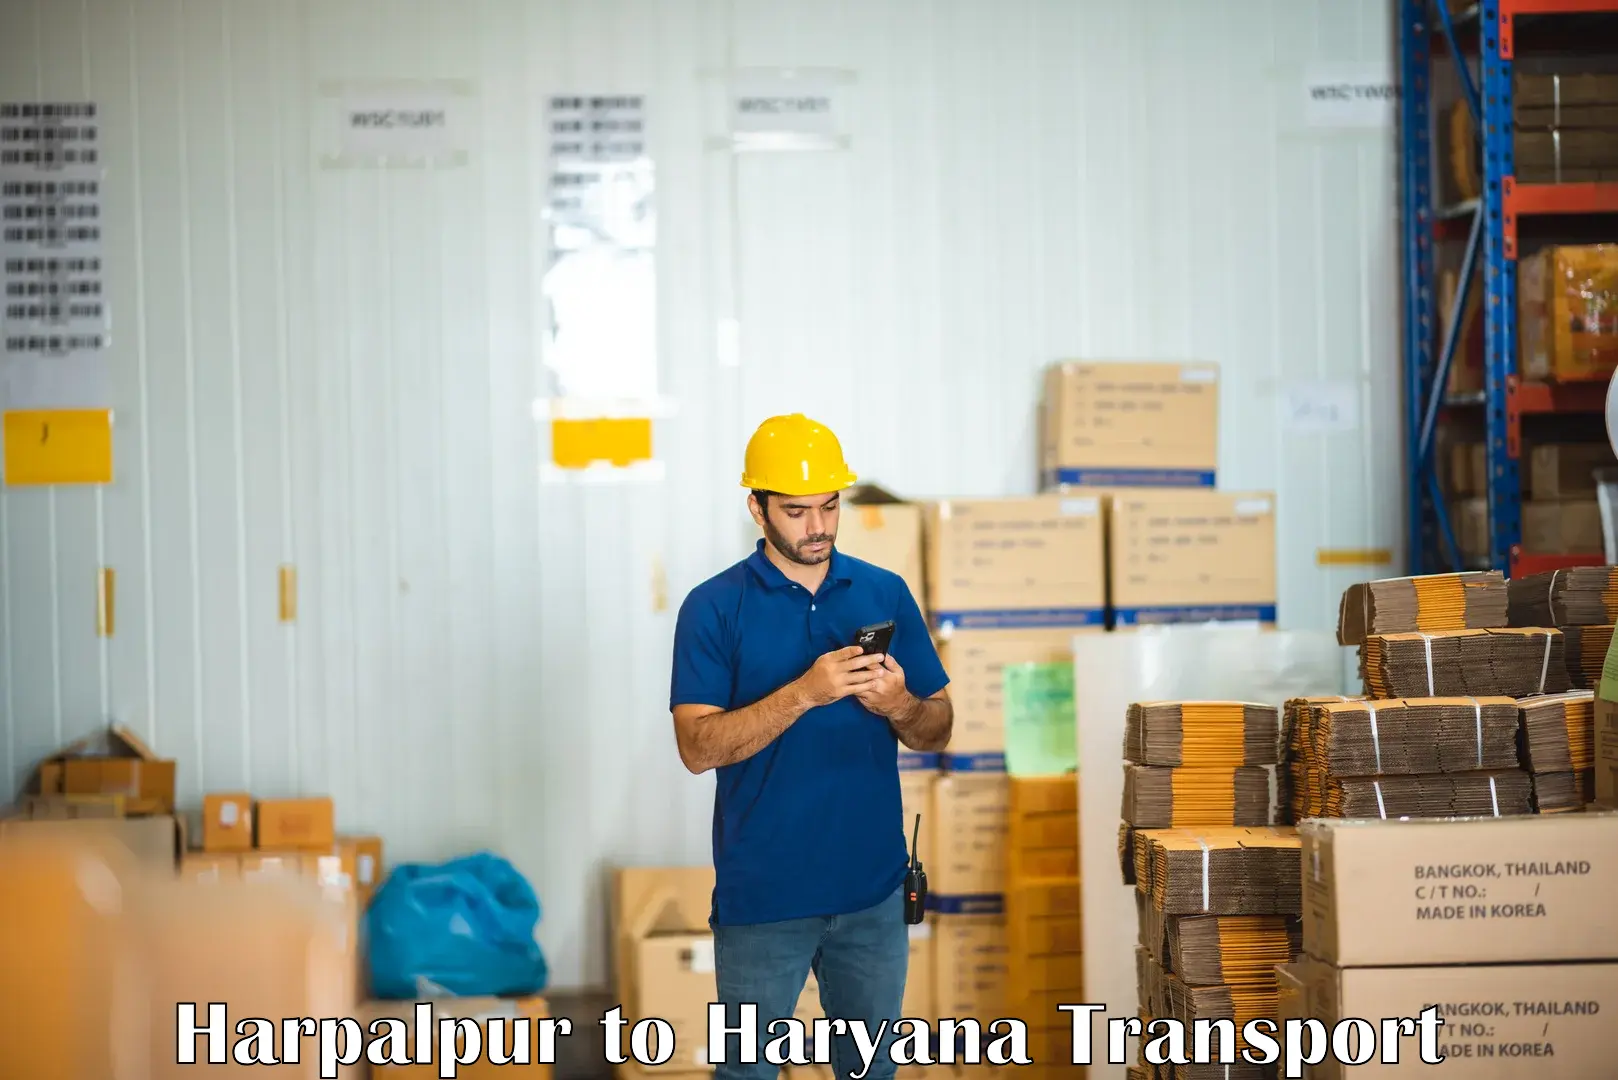 Container transport service Harpalpur to Rewari